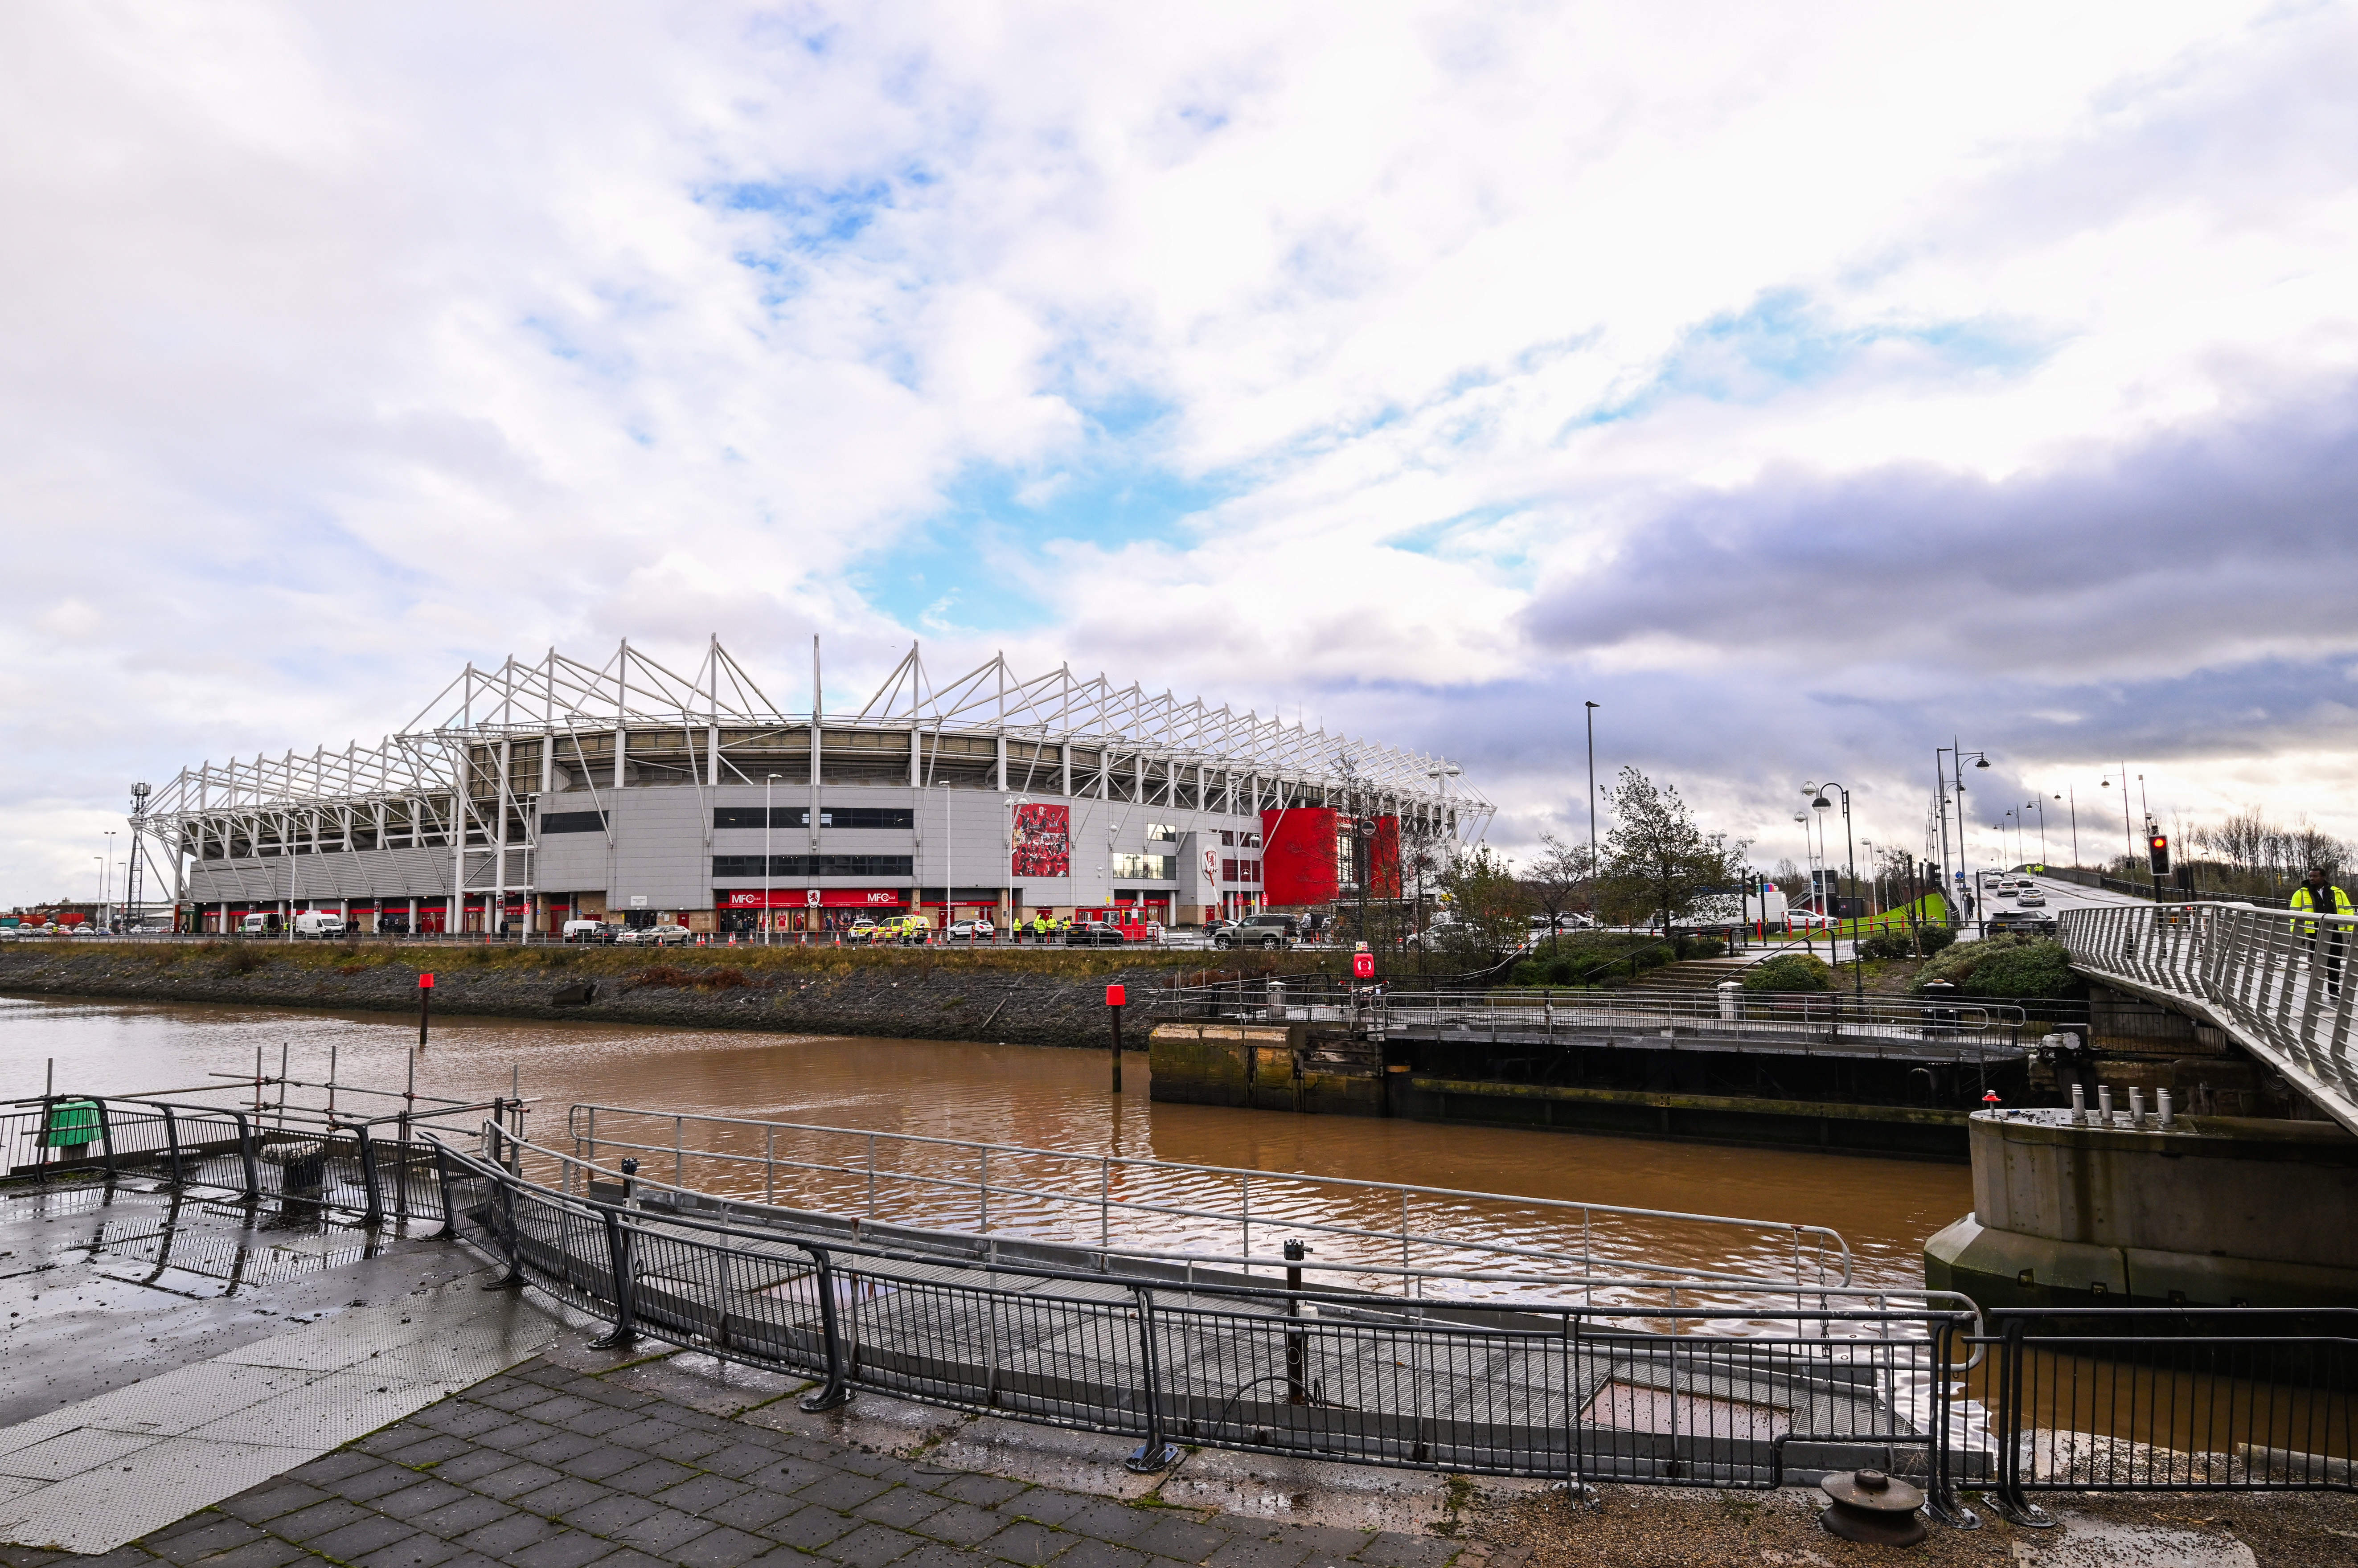 Riverside Stadium, Middlesbrough